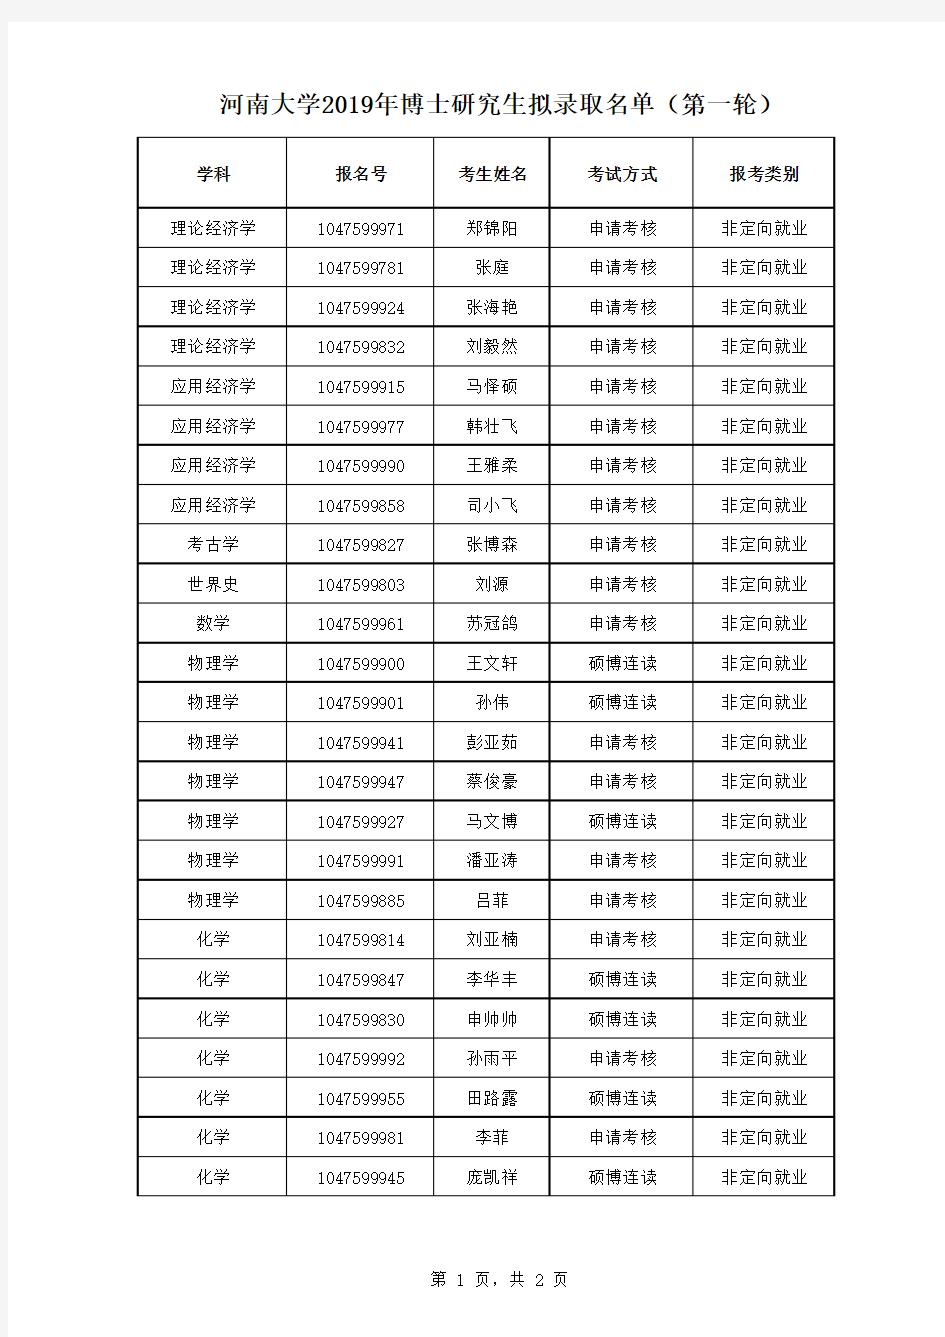 河南大学2019年博士研究生拟录取名单(第一轮)--公示